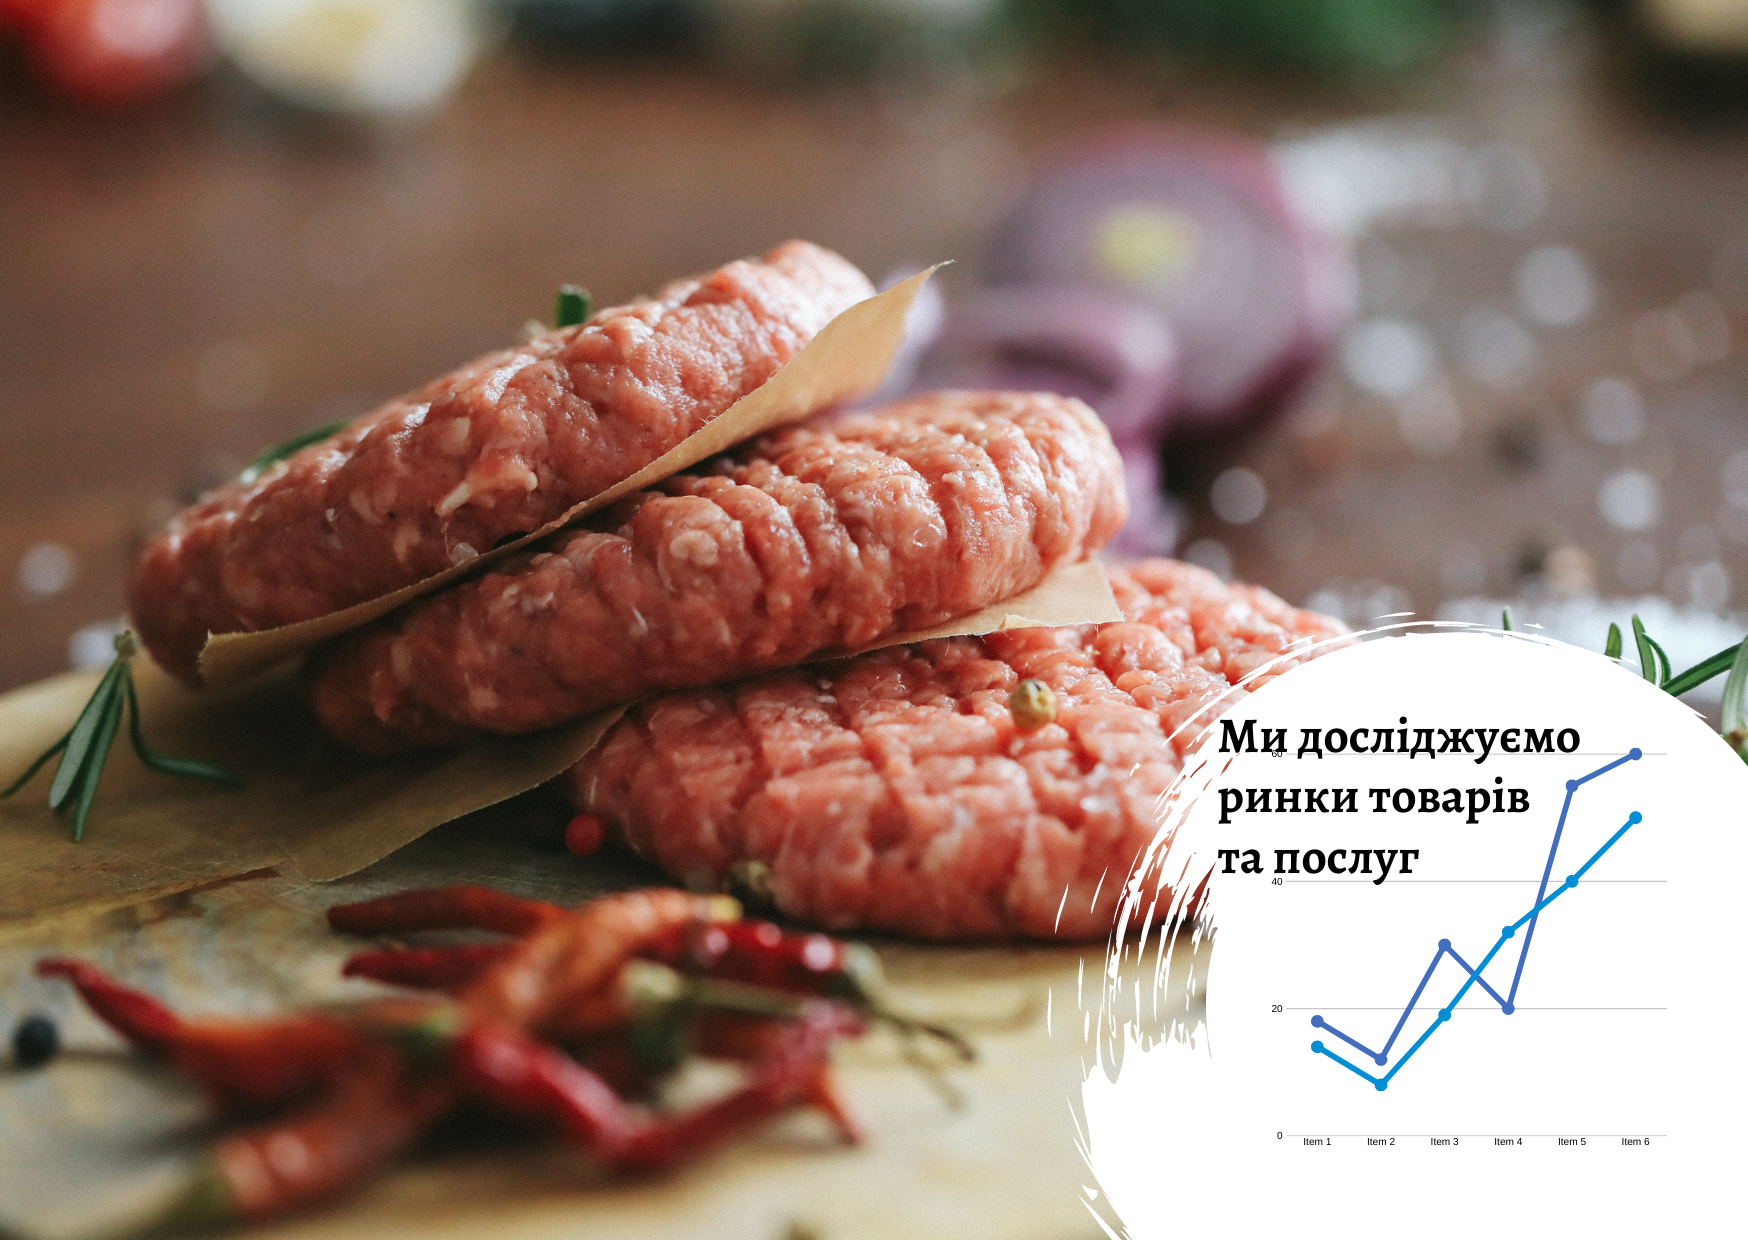 Ukrainian semi-finished meat products market